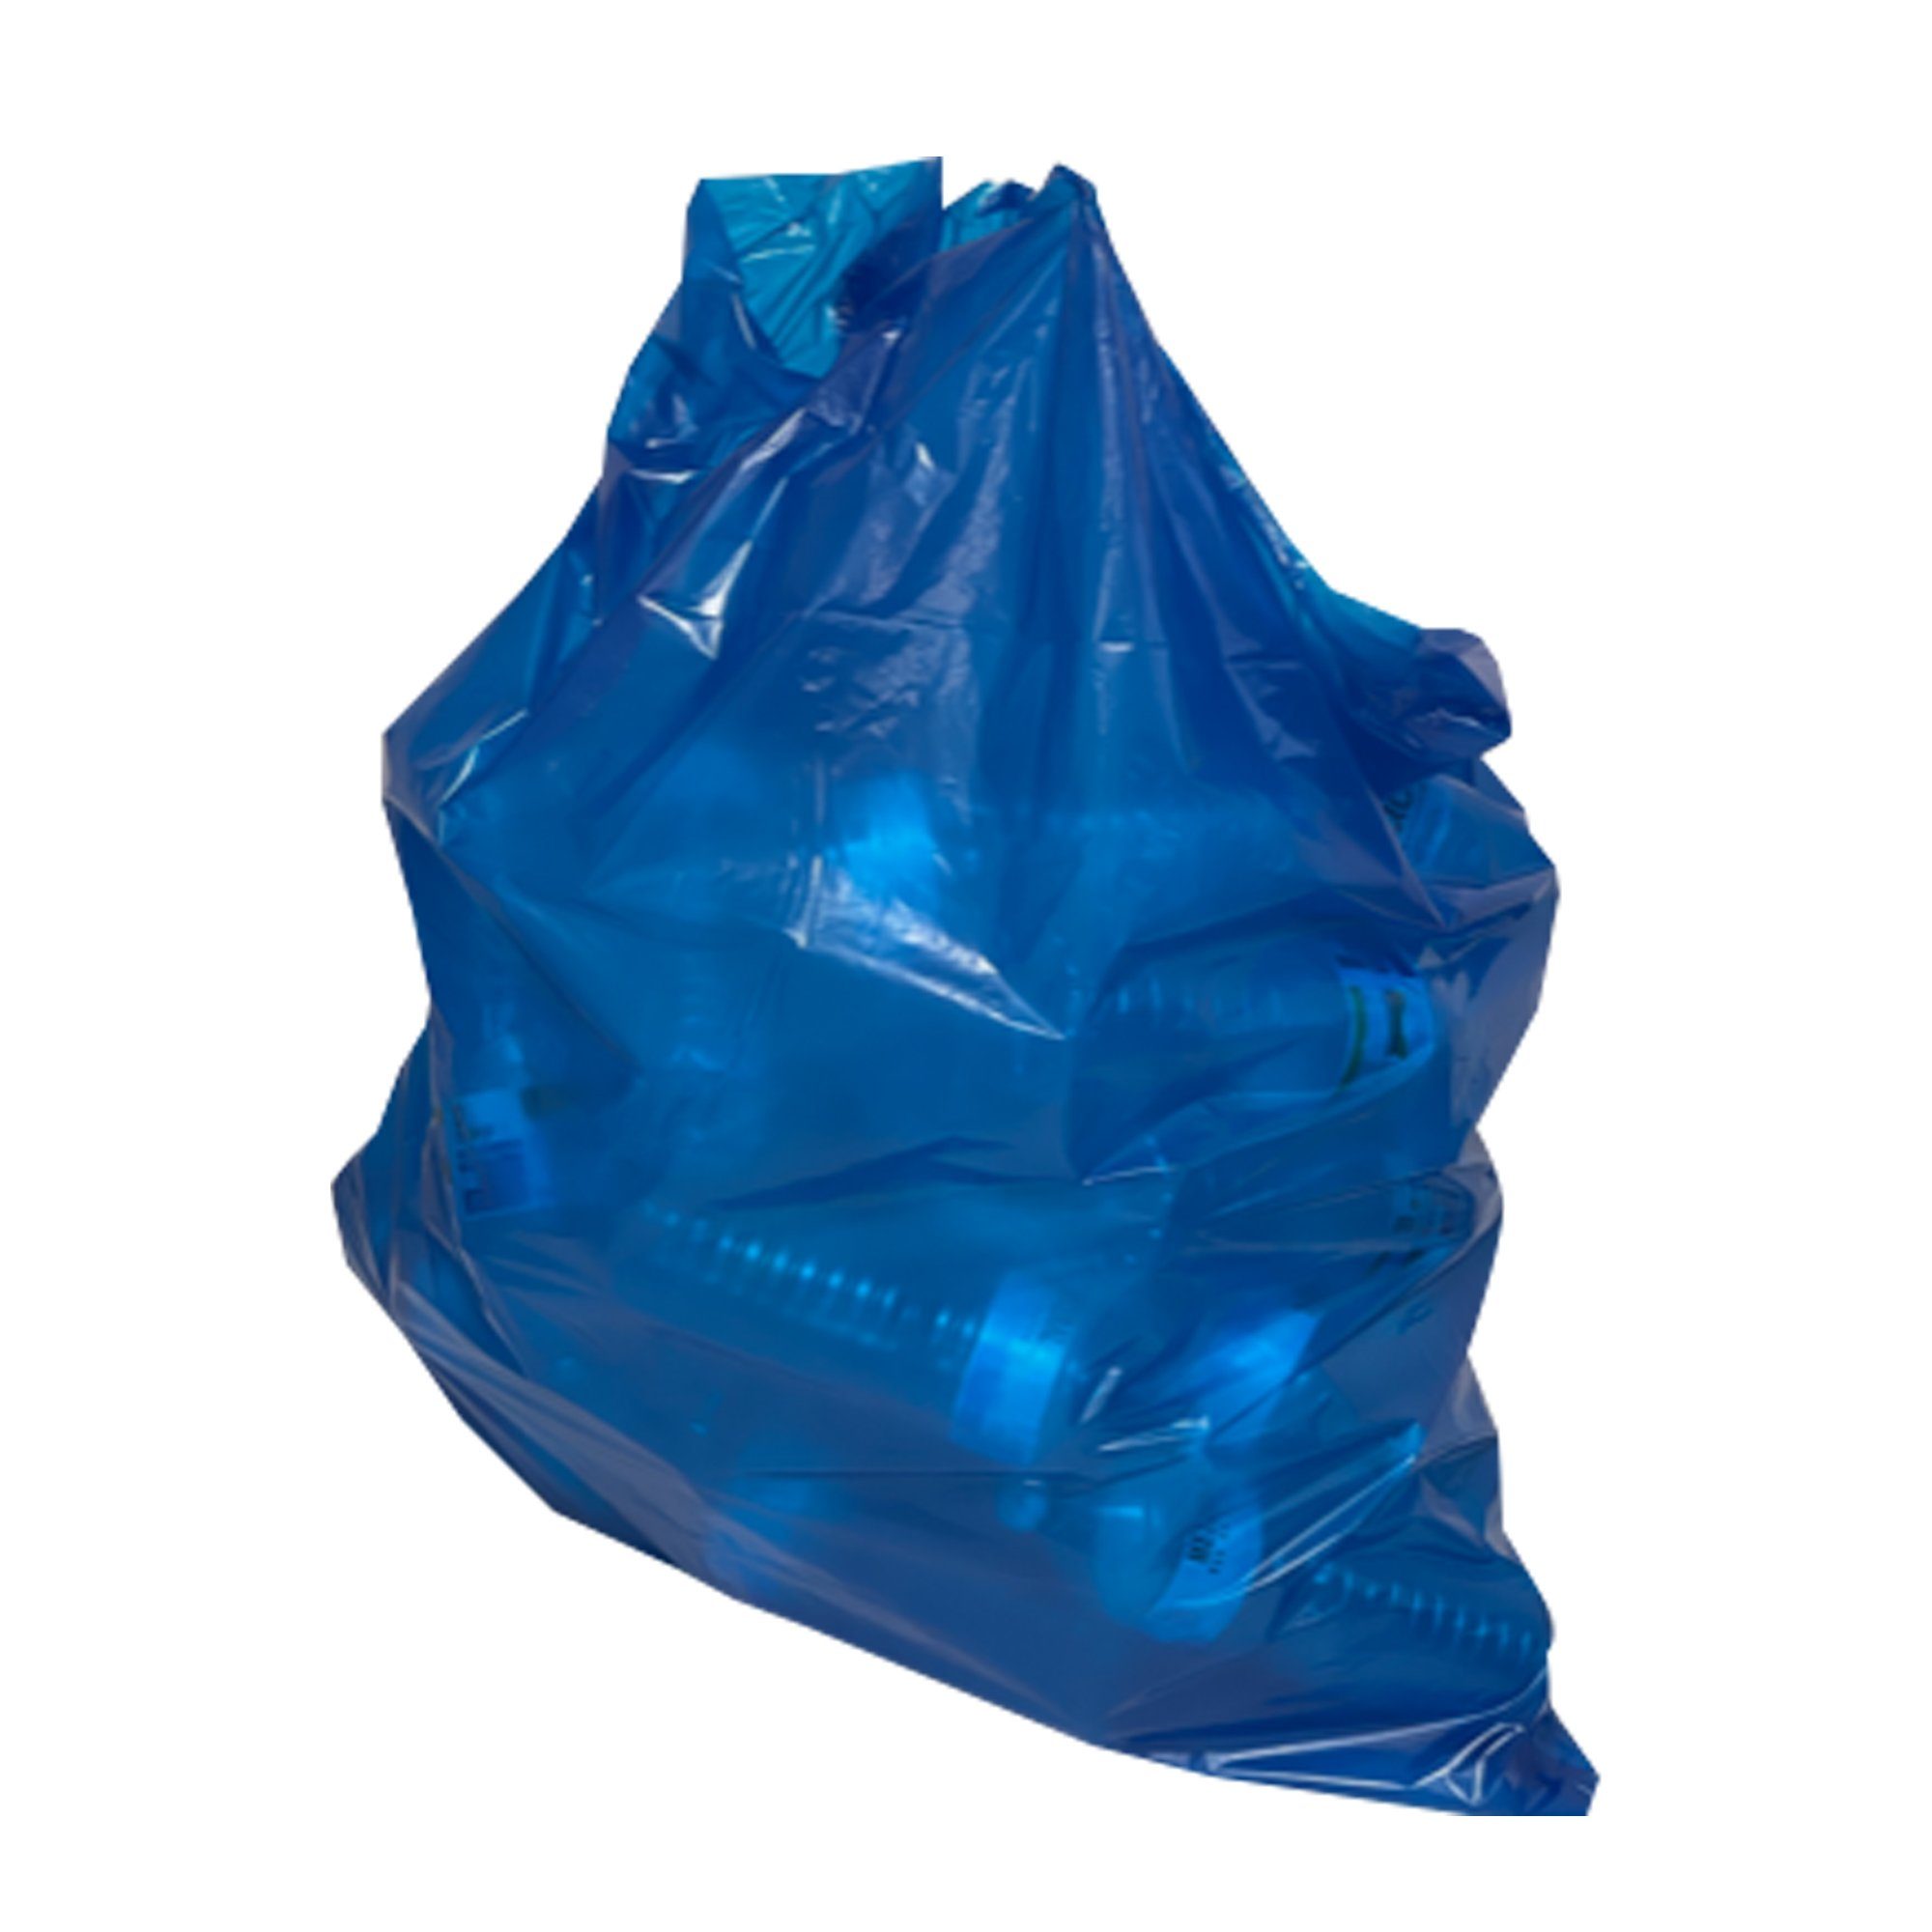 120L Abfallsäcke Müllsäcke blau extra Mülleimer VaGo-Tools 450 St stark